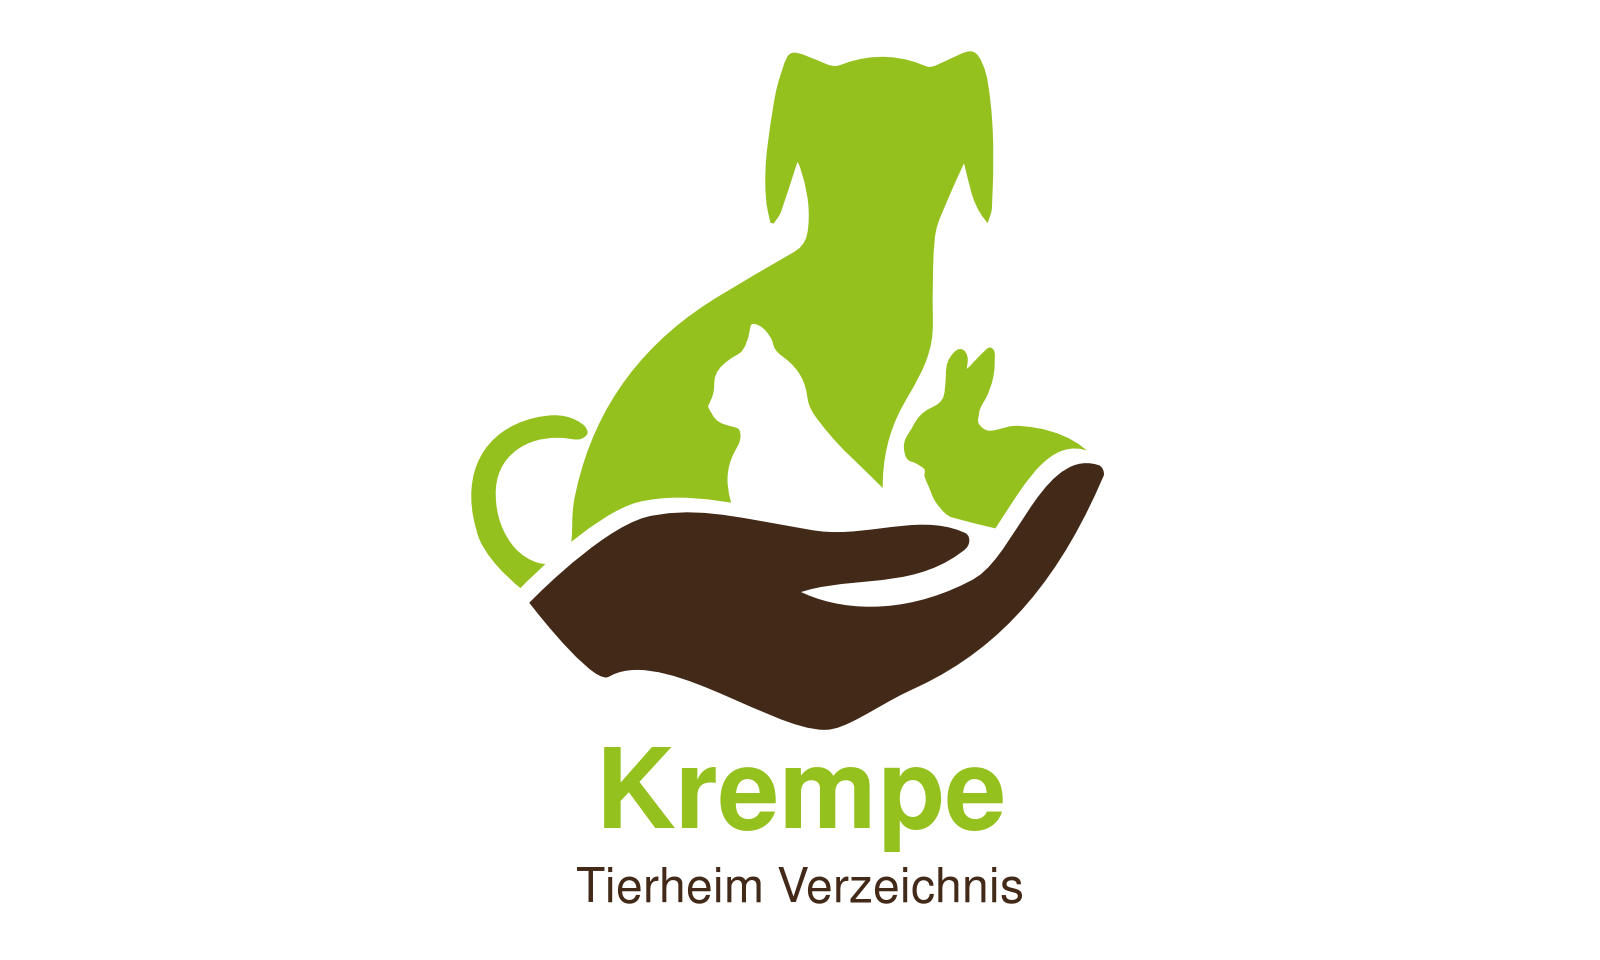 Tierheim Krempe